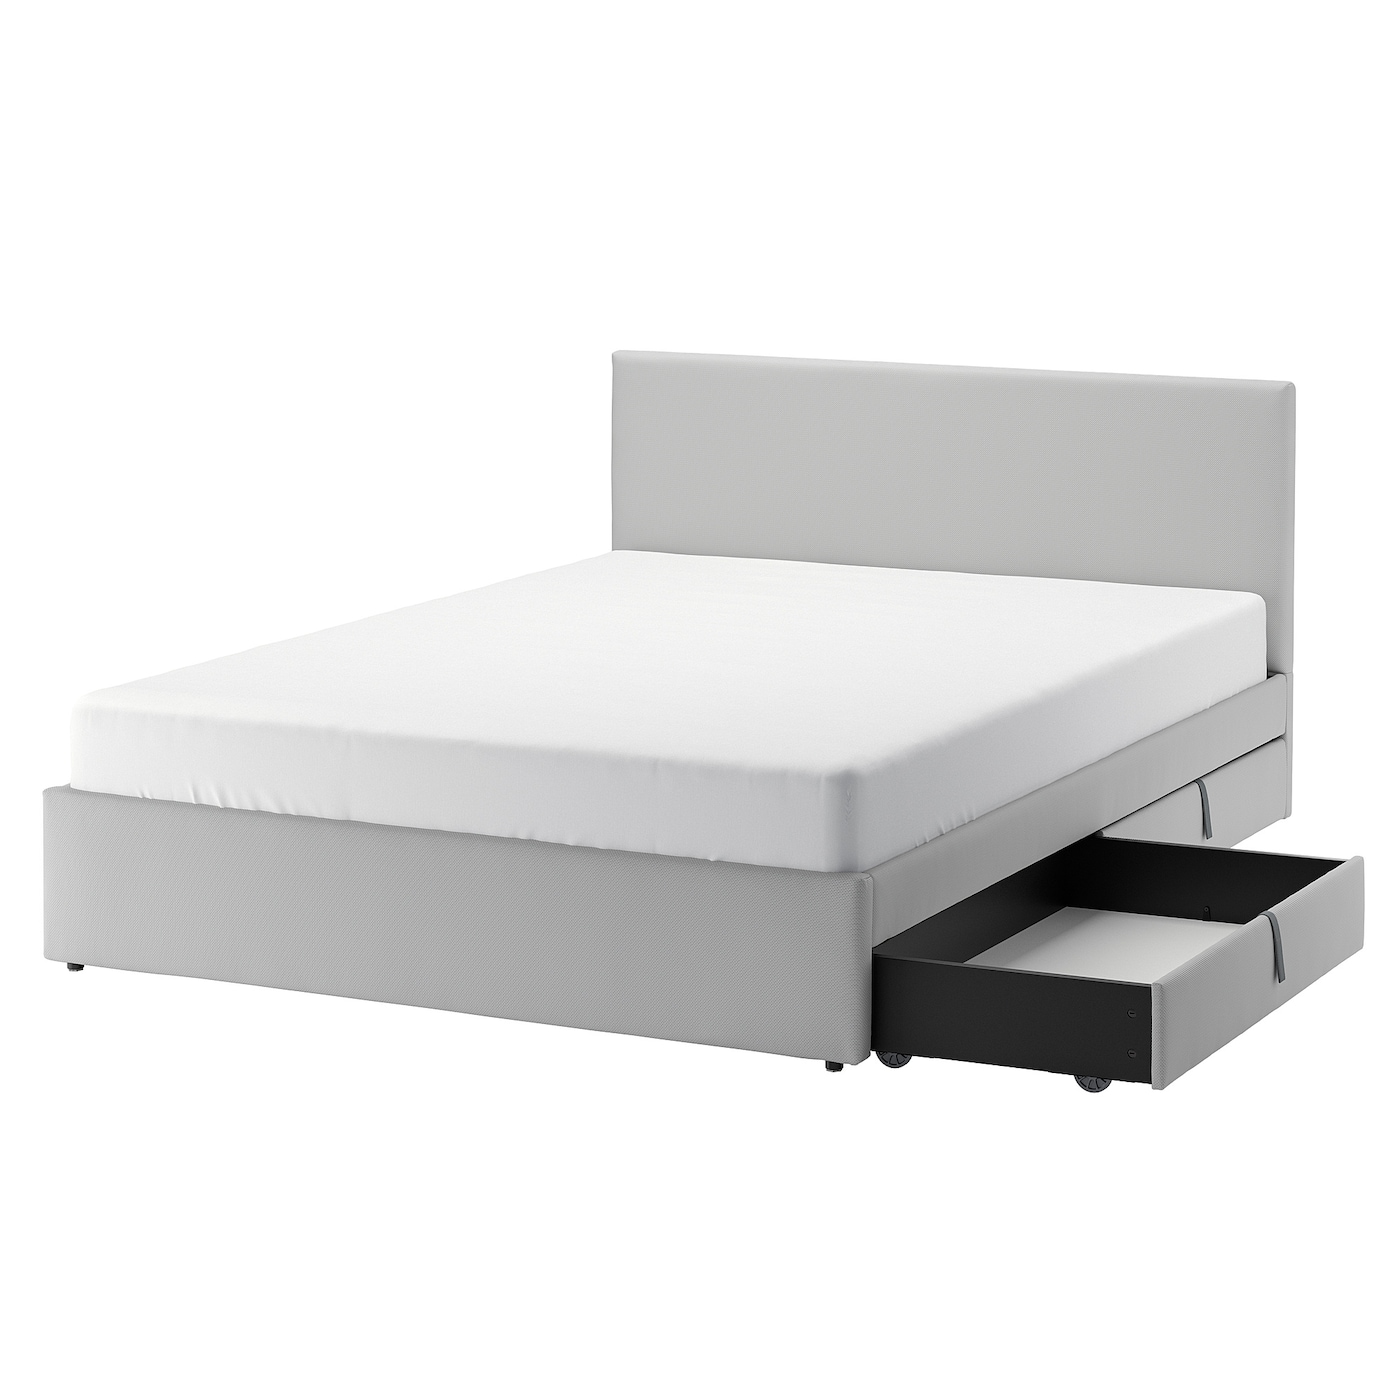 Основание двуспальной кровати - IKEA GLADSTAD, 200х140 см, светло серый, ГЛАДСТАД ИКЕА